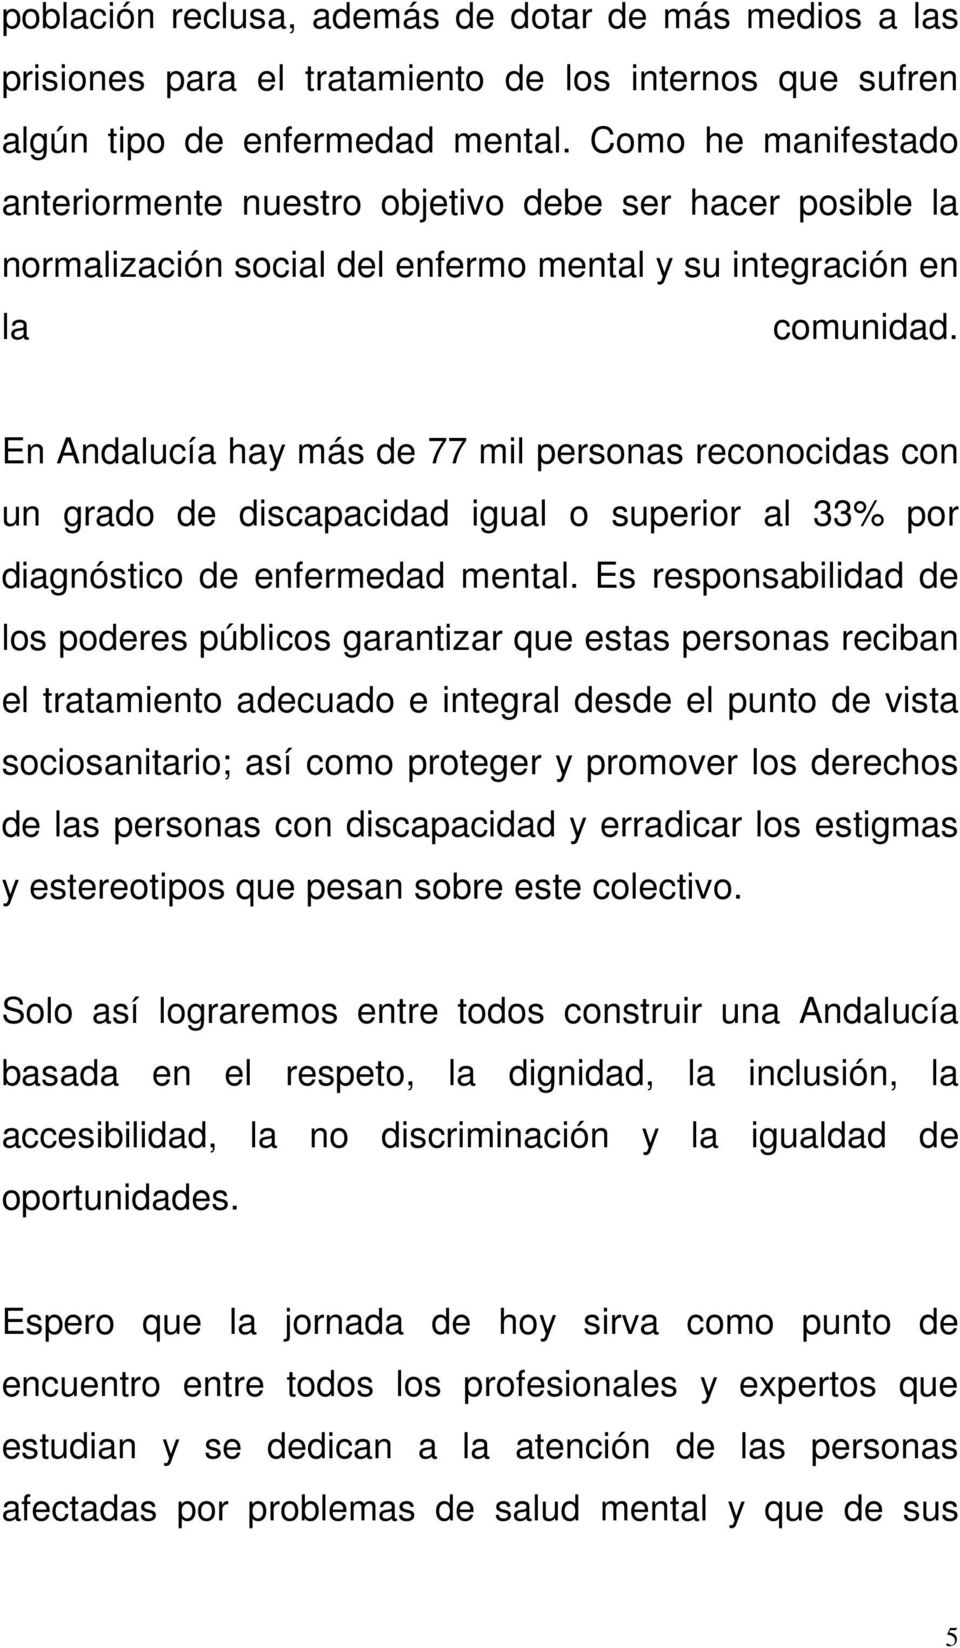 En Andalucía hay más de 77 mil personas reconocidas con un grado de discapacidad igual o superior al 33% por diagnóstico de enfermedad mental.